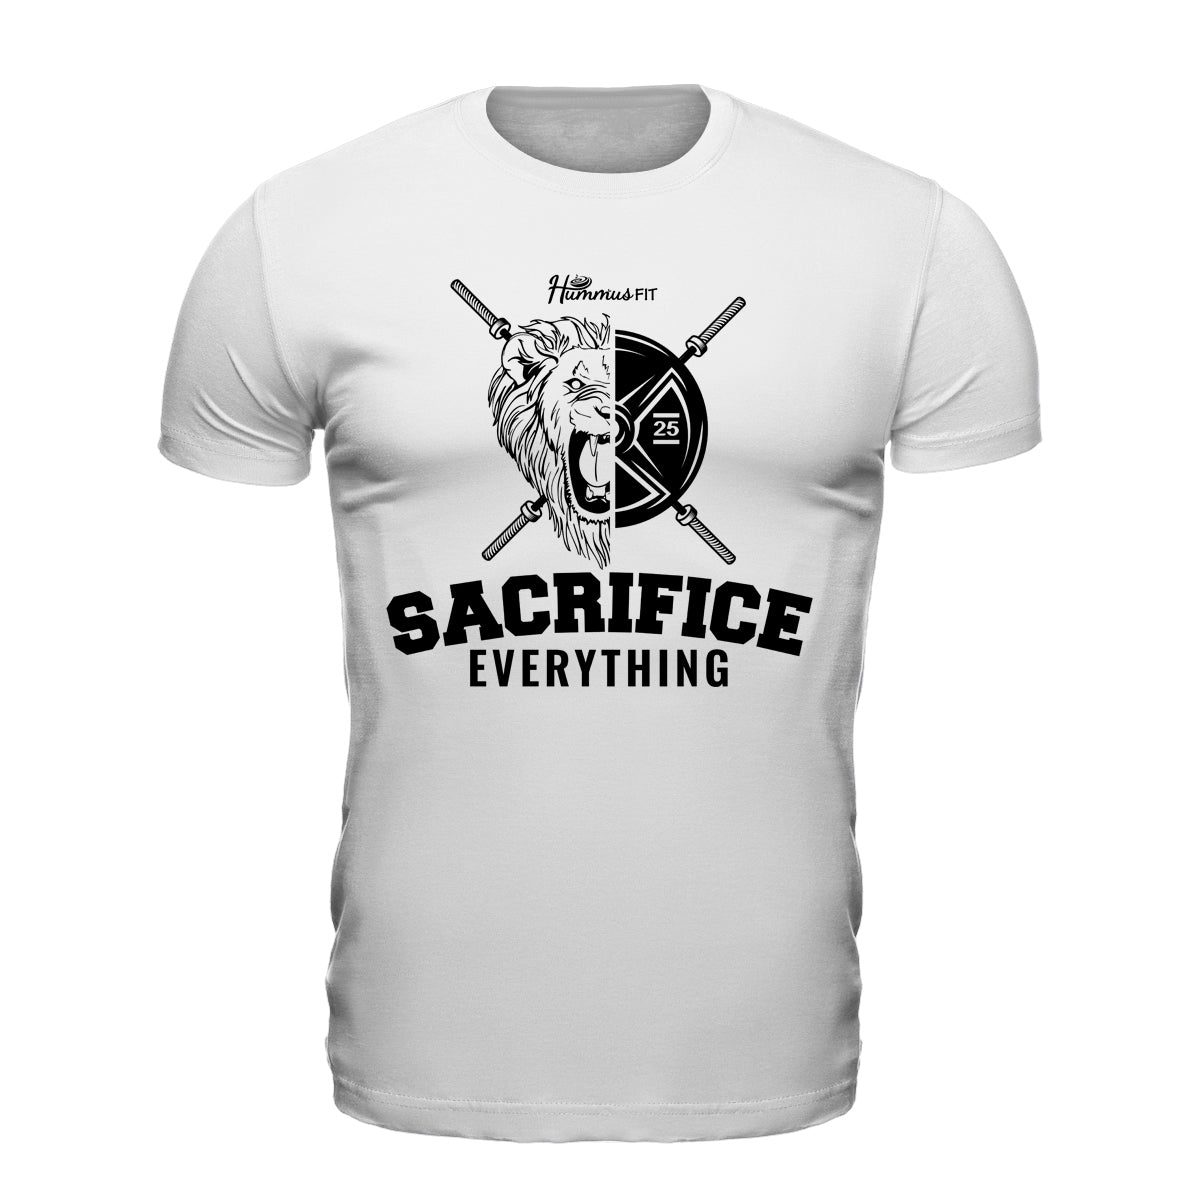 OG Sacrifice - Camiseta unisex Softstyle (Blanco)